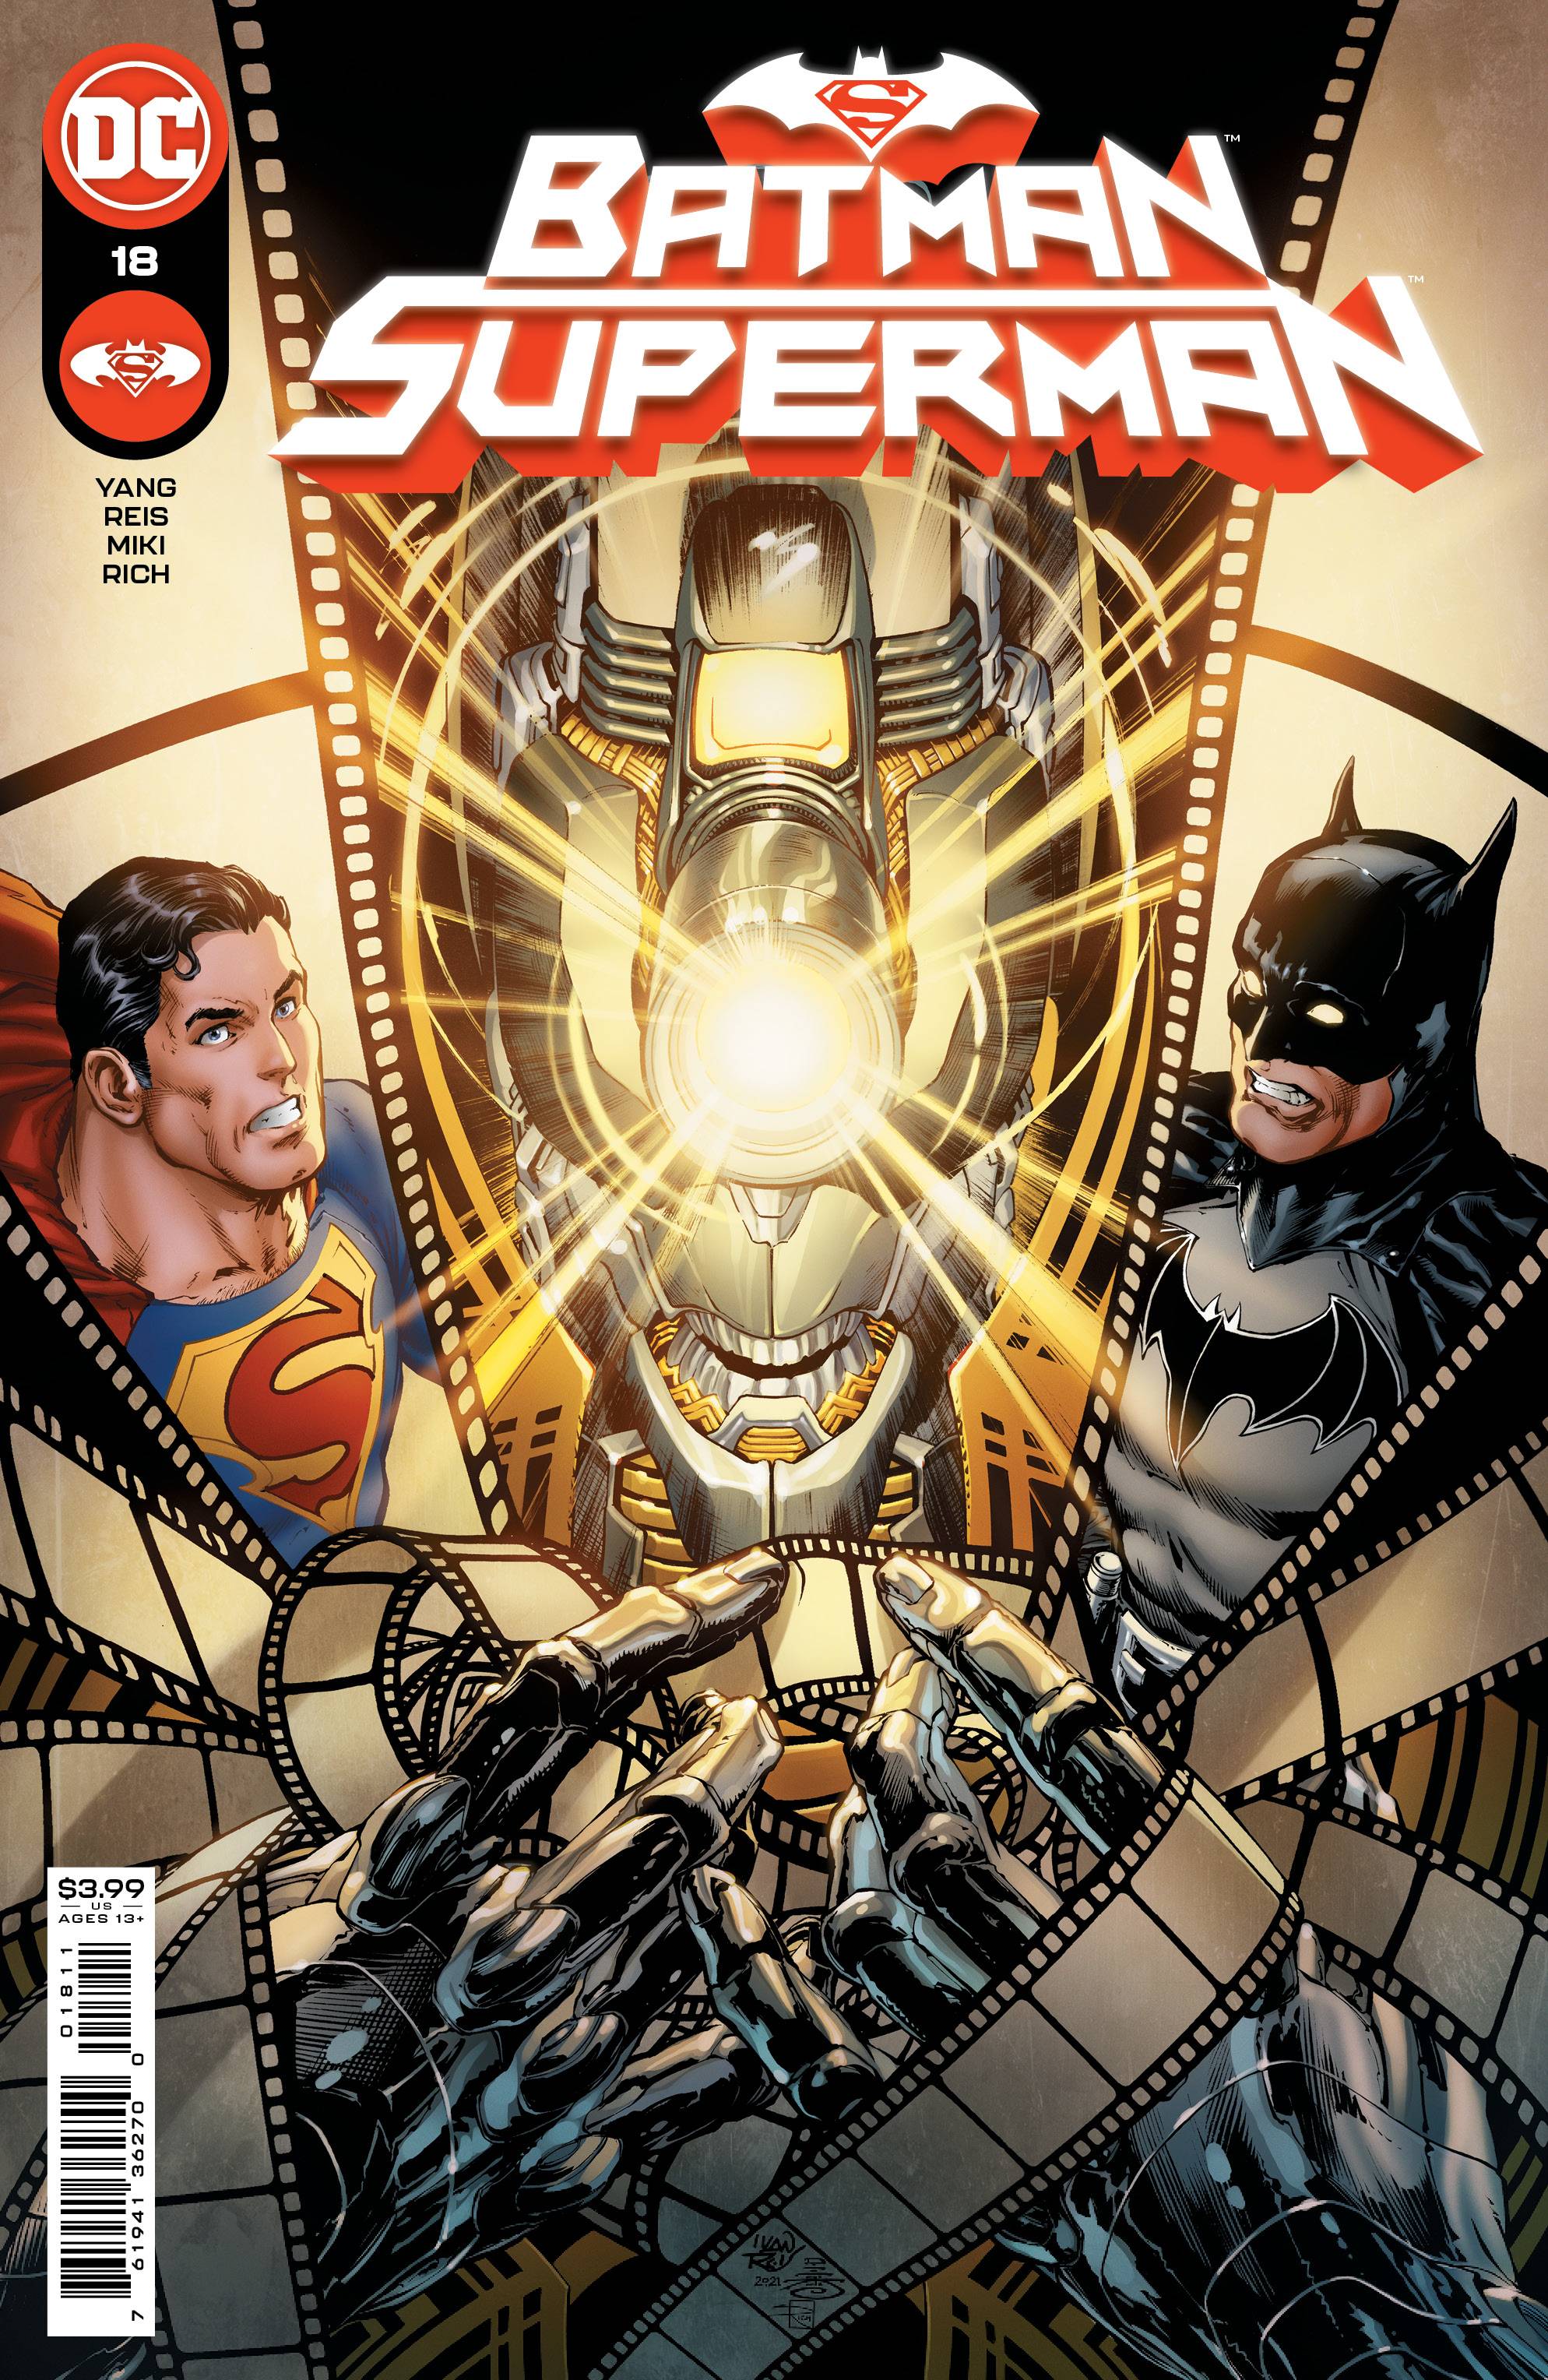 BATMAN SUPERMAN #18 CVR A REIS | L.A. Mood Comics and Games